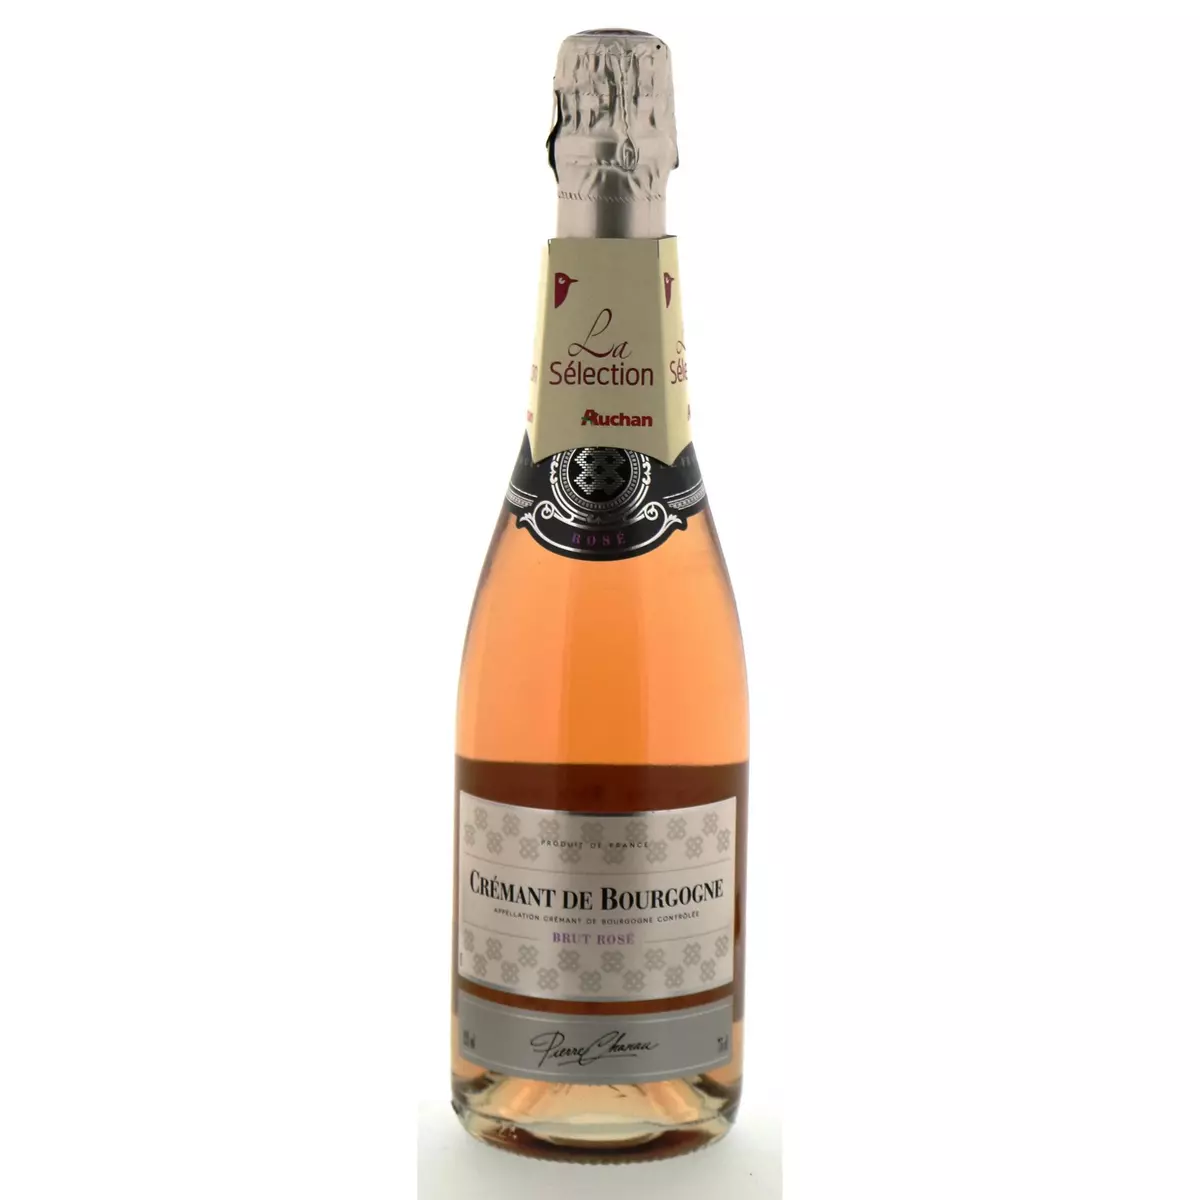 PIERRE CHANAU AOP Crémant de Bourgogne brut rosé 75cl